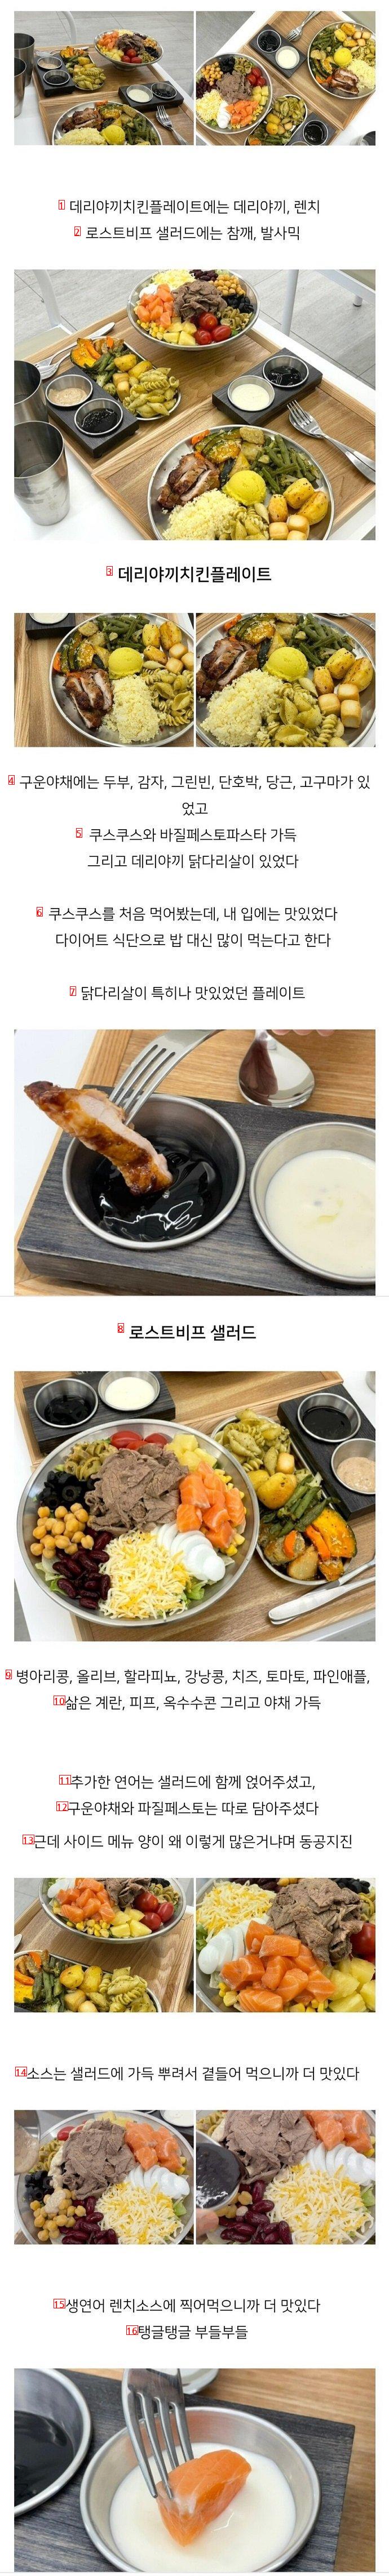 강남 샐러드 성매매 업소 실제 후기